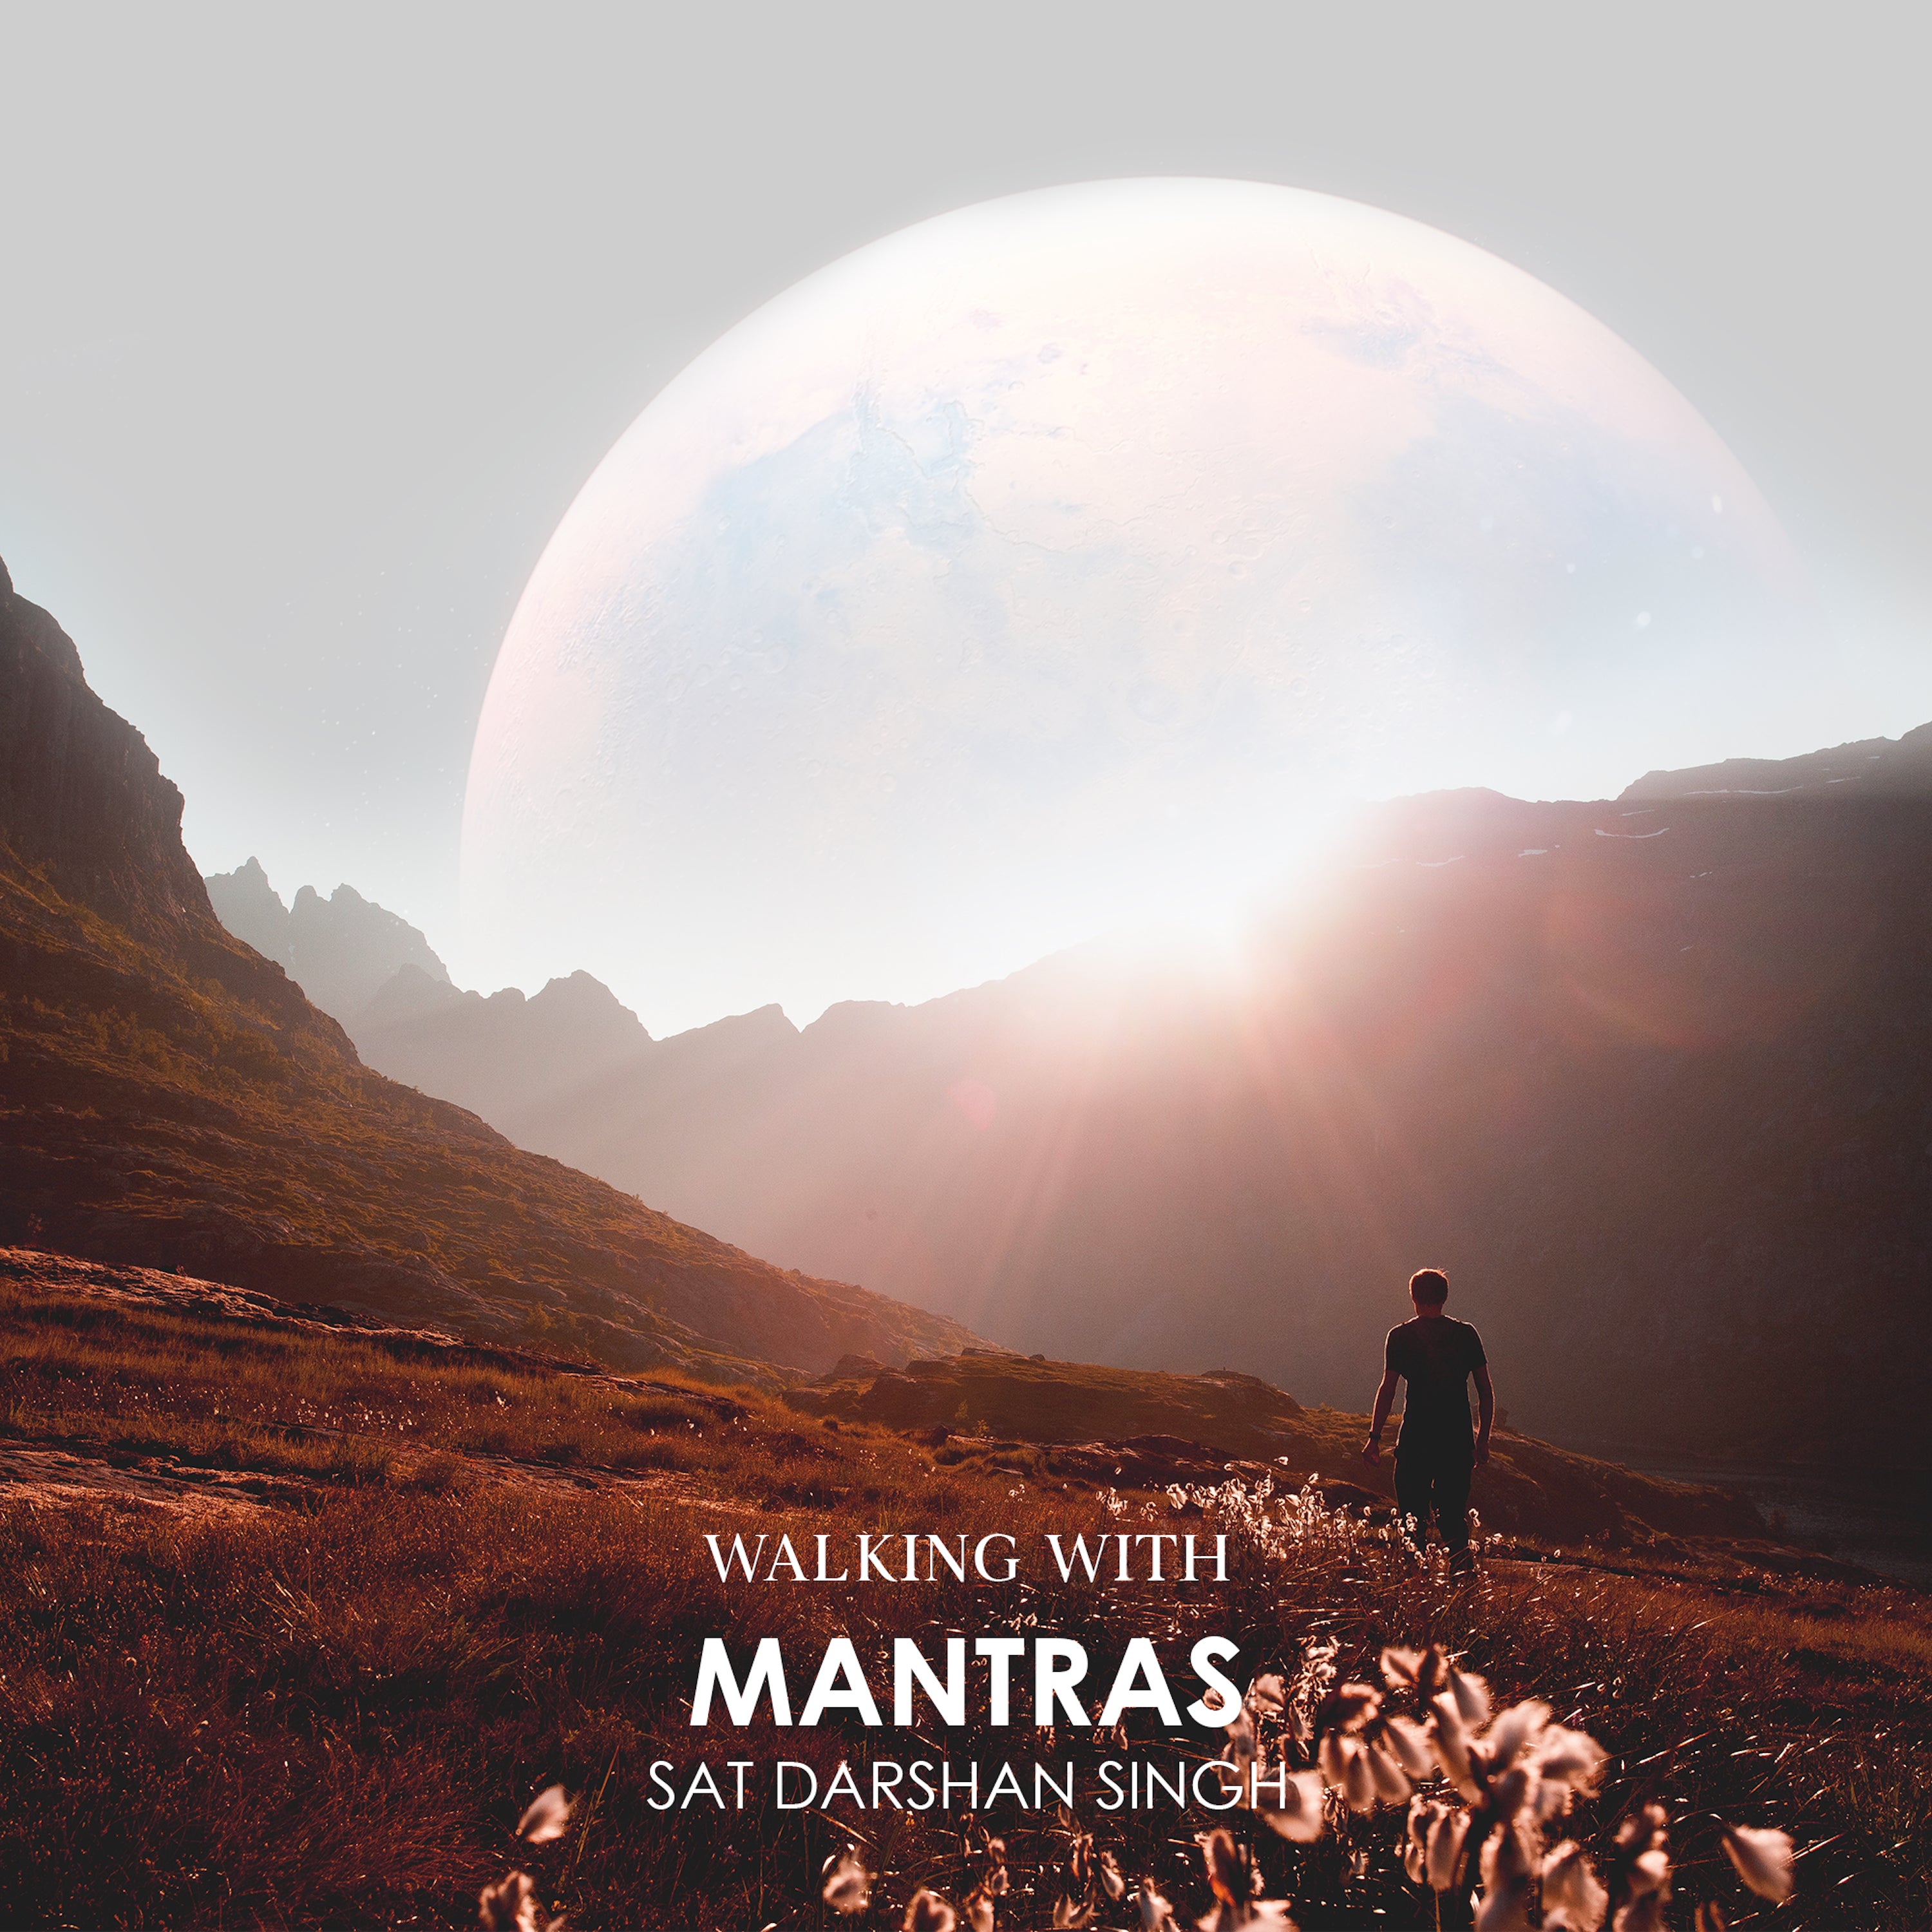 Walking with Mantras - Sat Darshan Singh complete